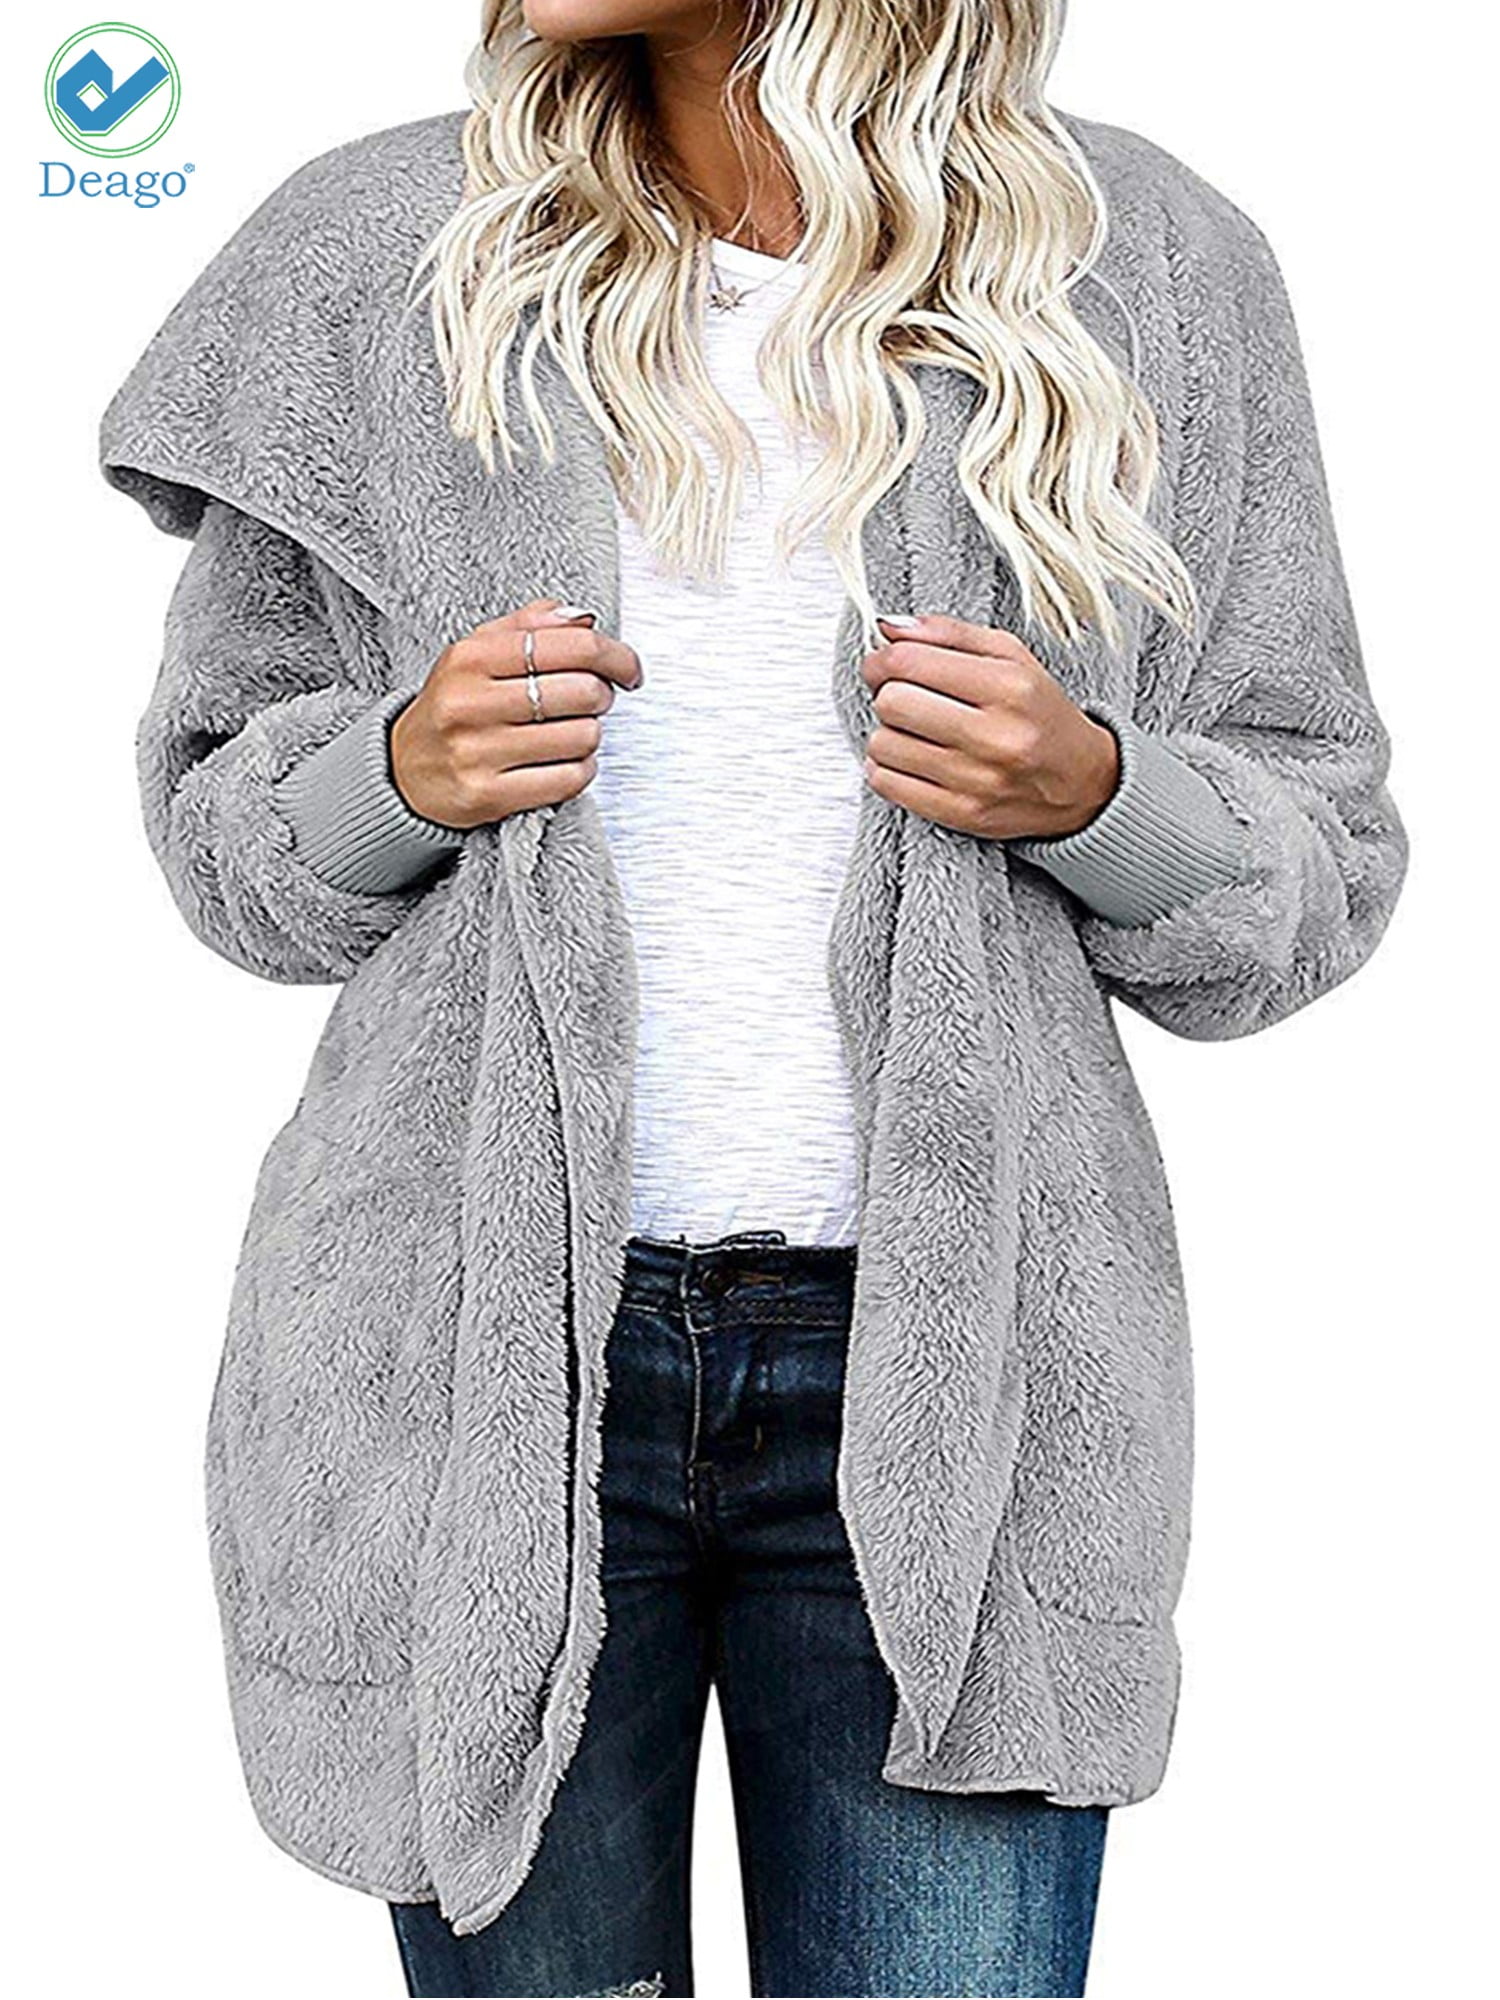 Zeagoo Women's Faux Fur Coat Fuzzy Cardigan Warm Fleece Jacket Long Sleeve Oversized Winter Outwear Pockets Coat